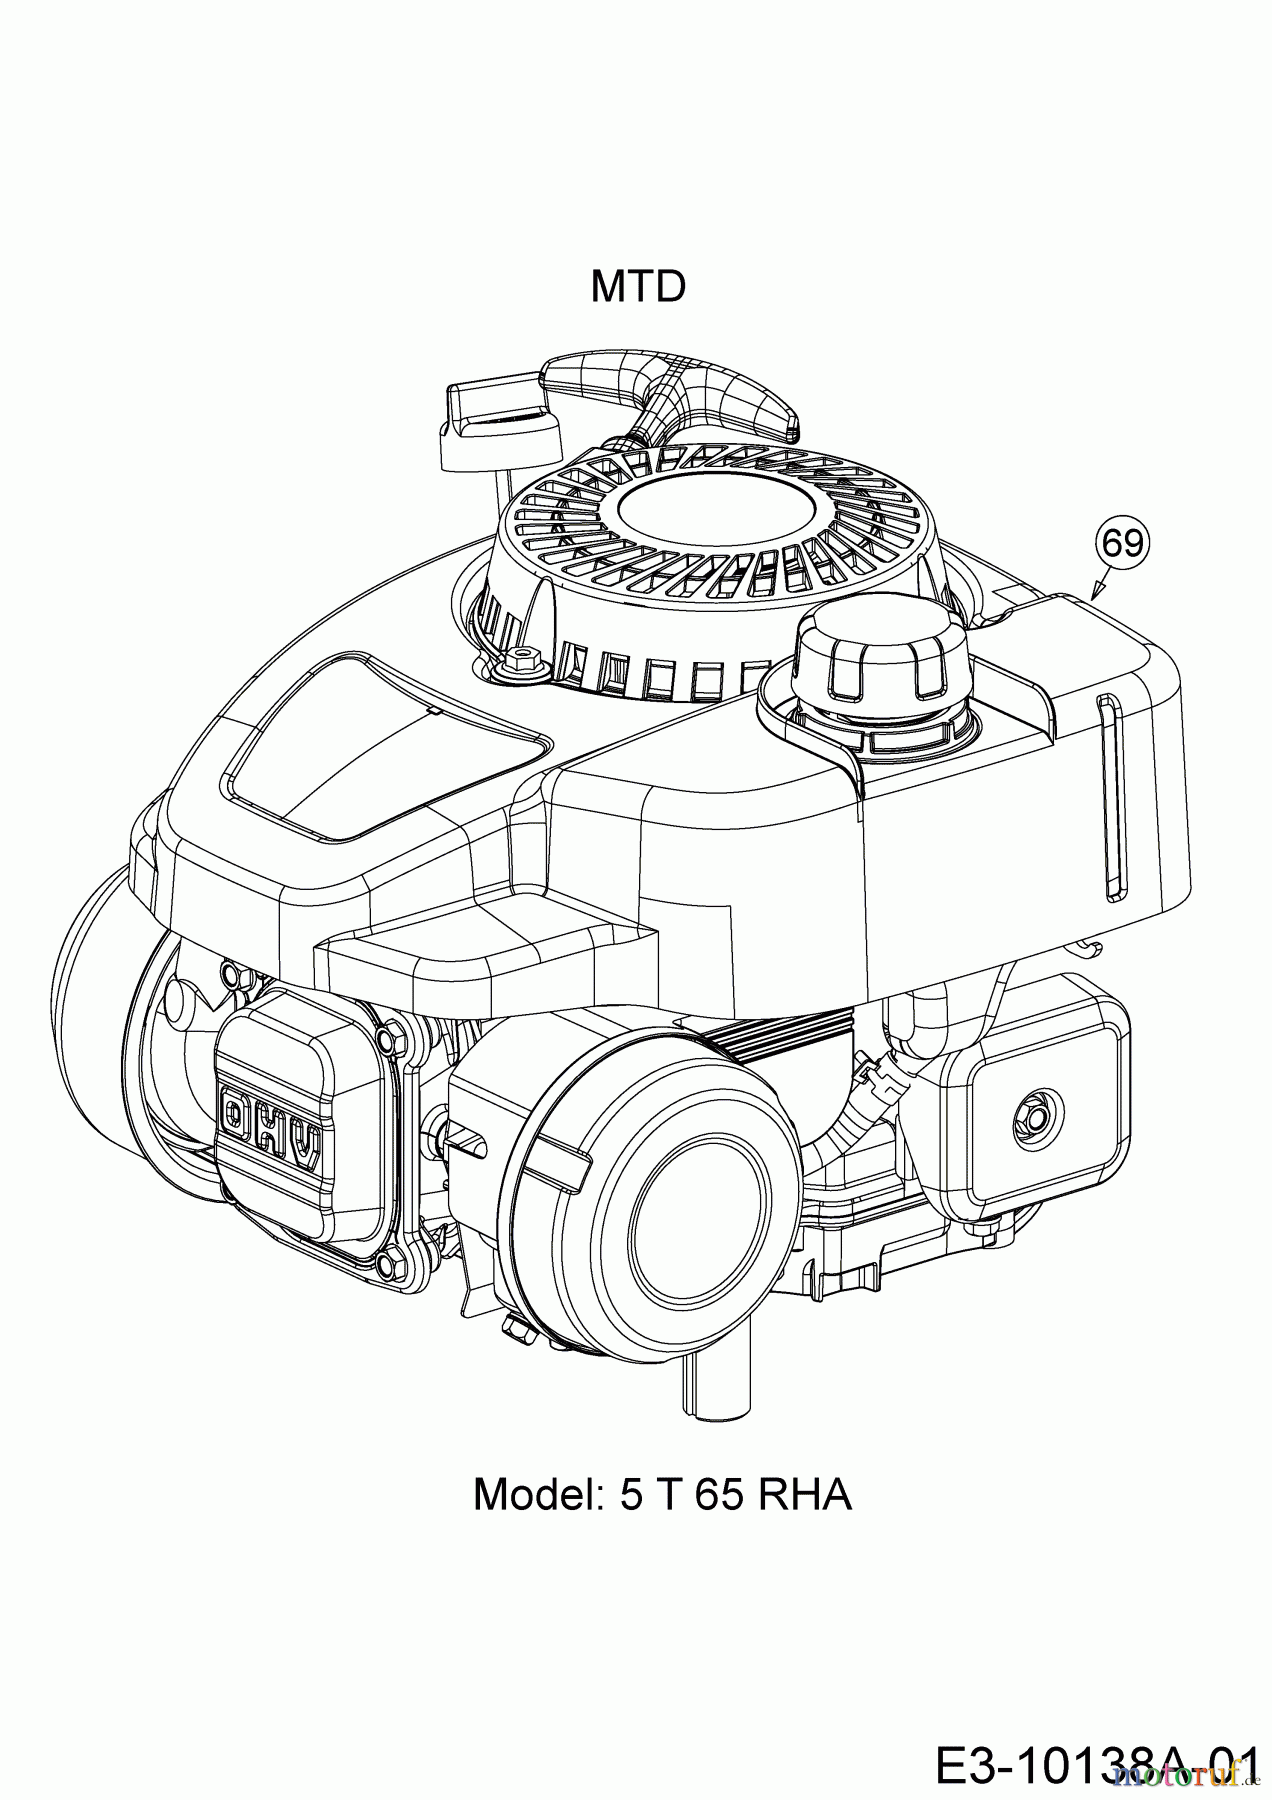  Wolf-Garten Motormäher mit Antrieb A 4600 AHWHBM 12A-TRSC650  (2017) Motor MTD